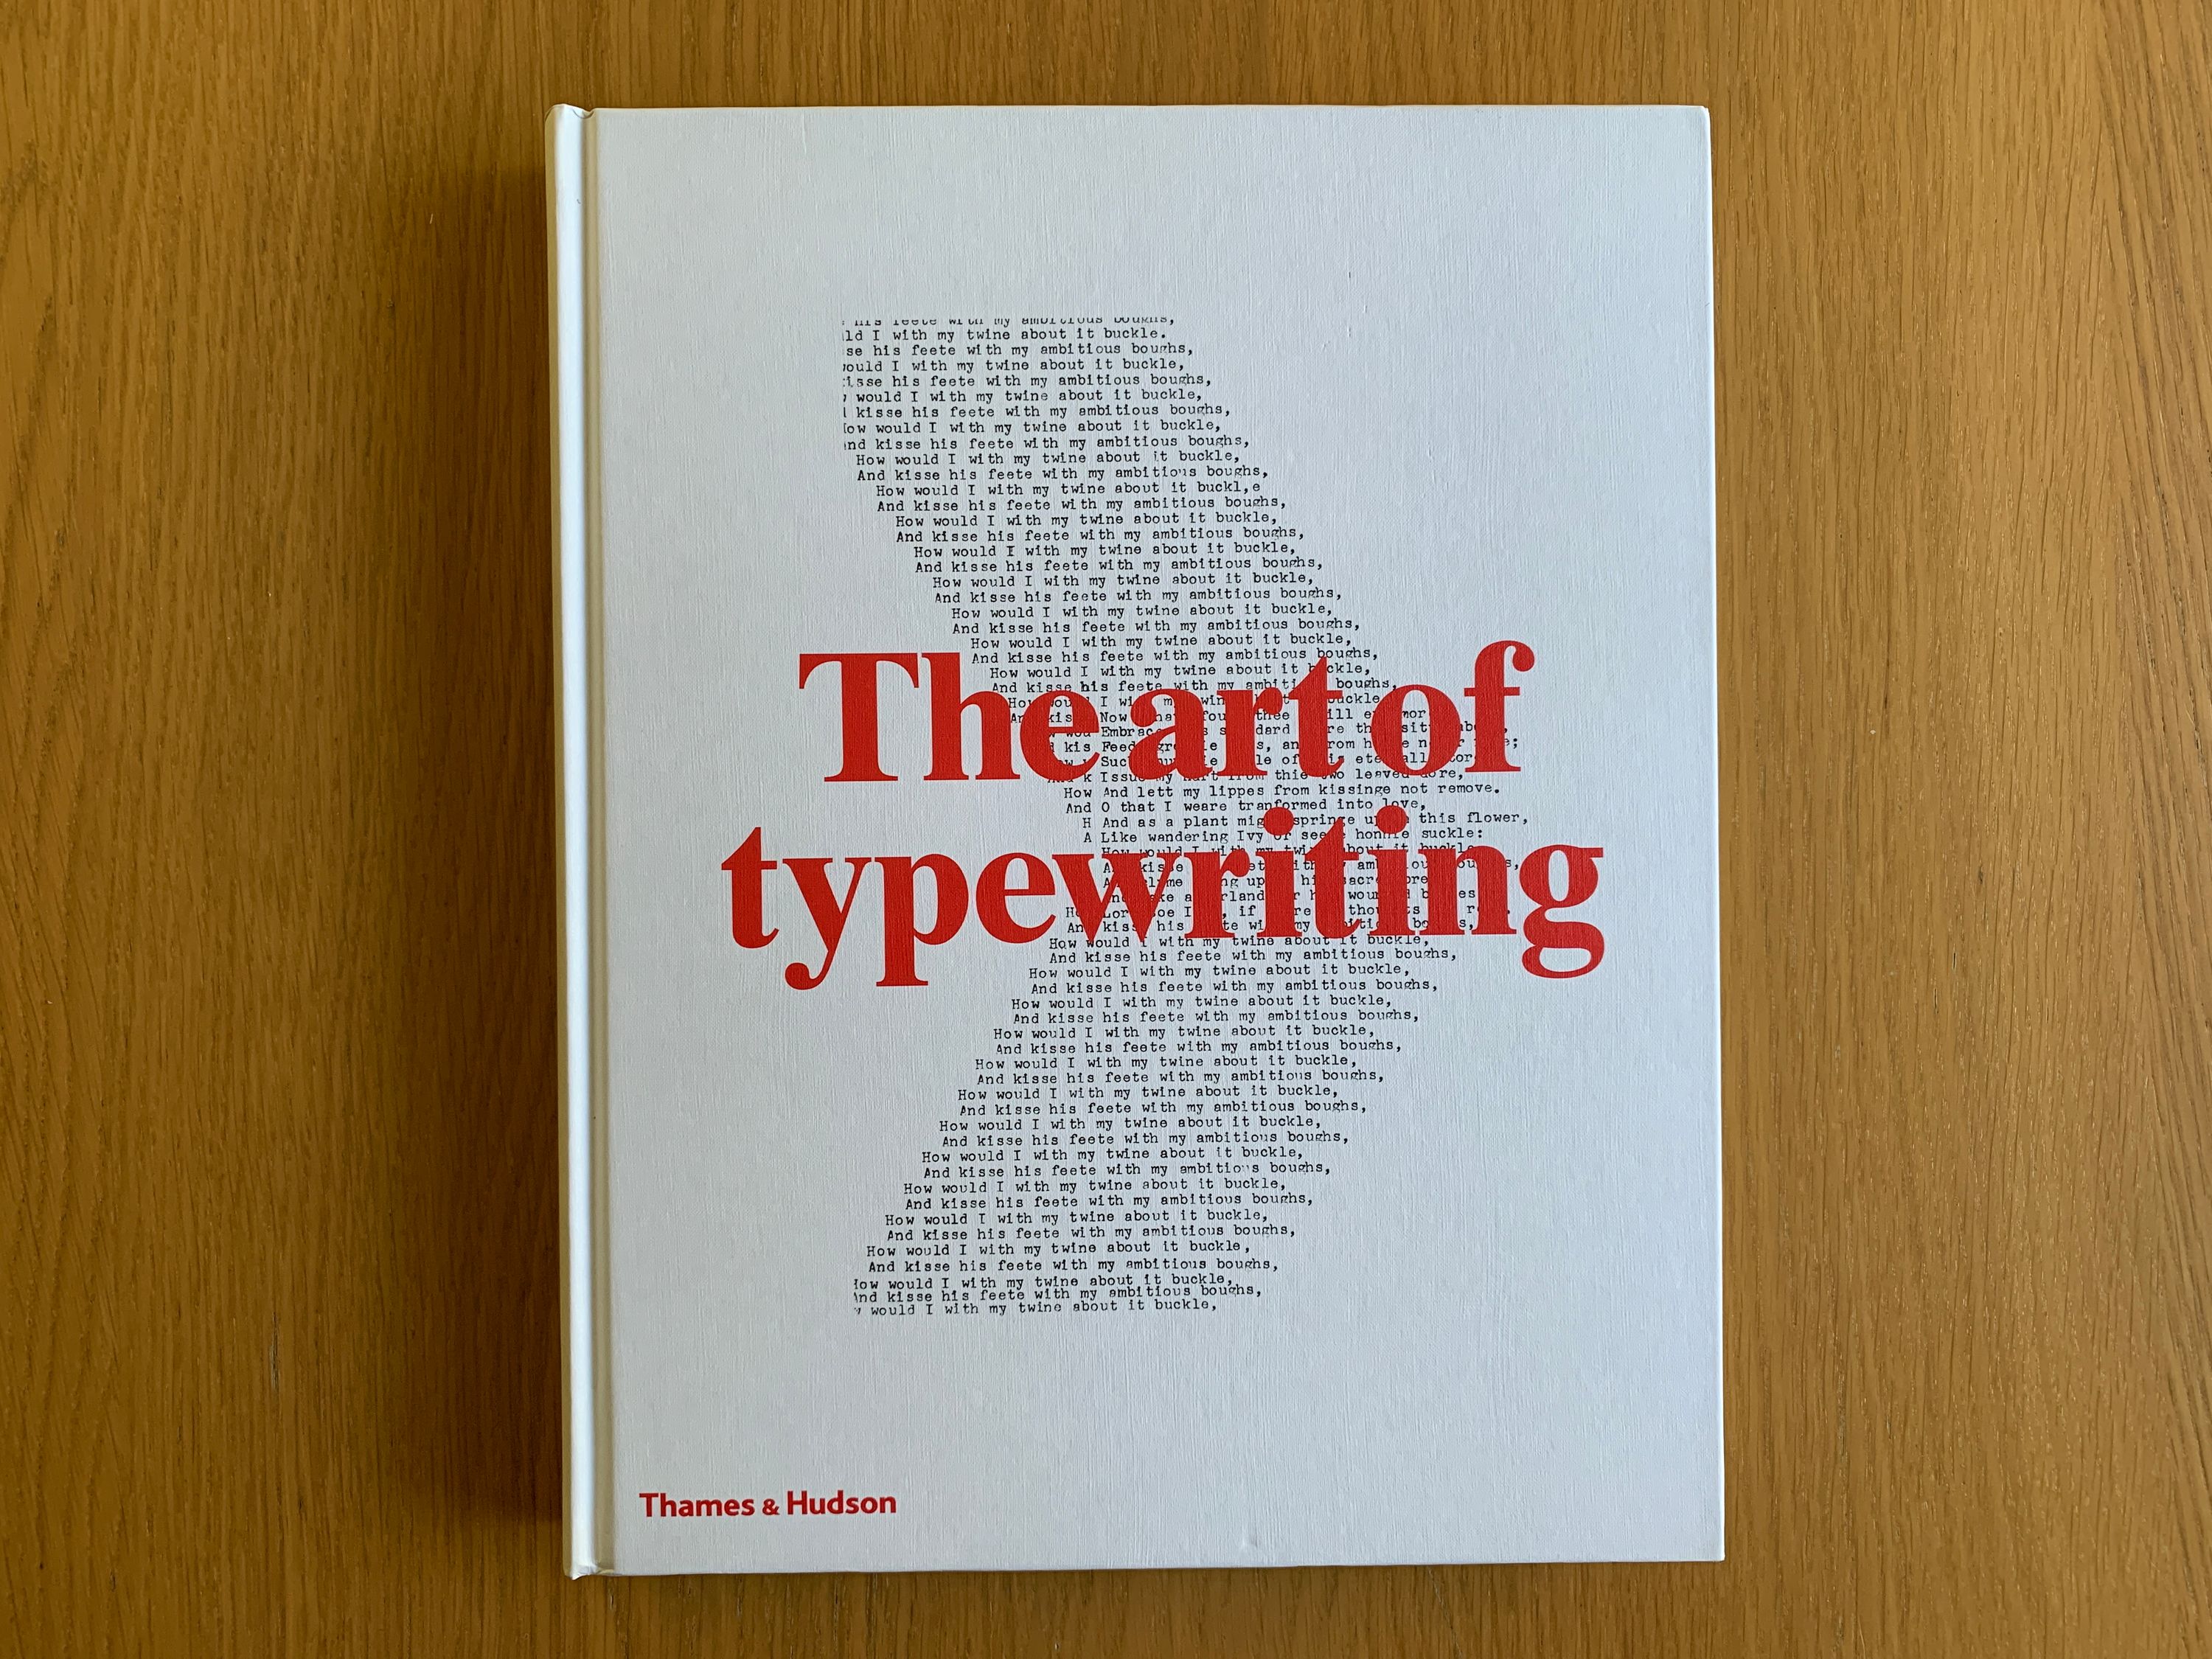 Art of typewriting